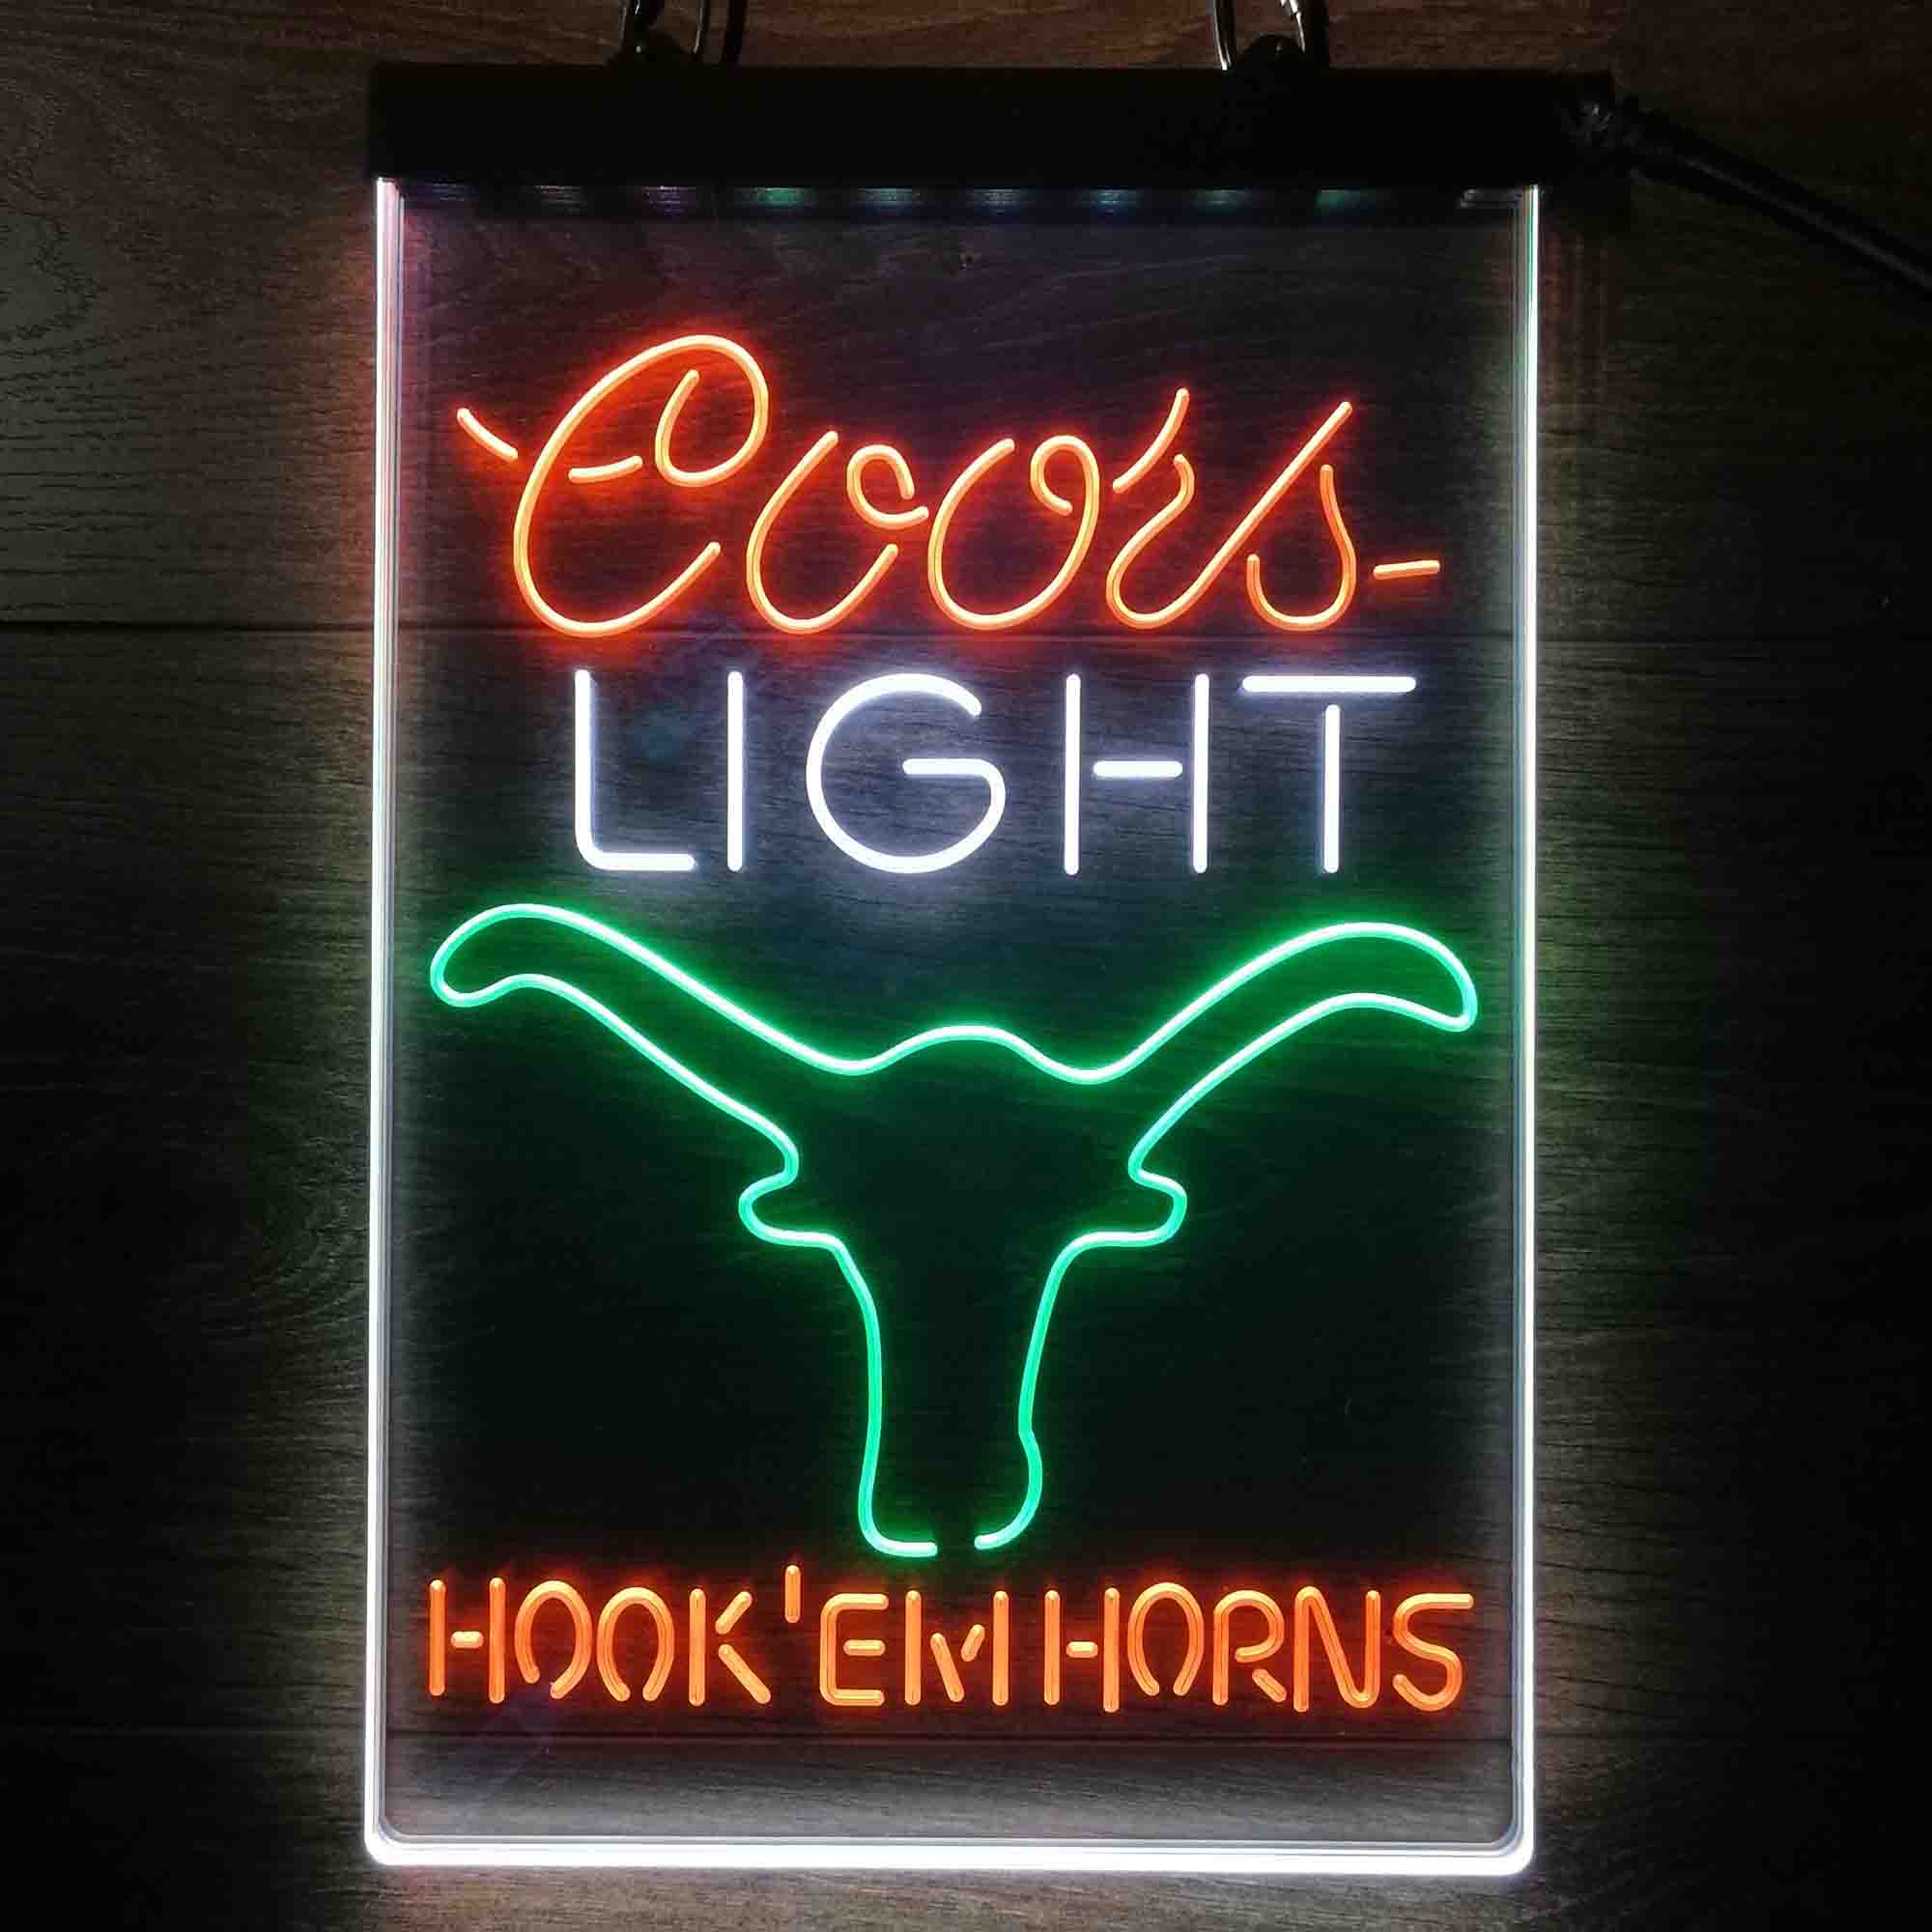 Hook em Horns Coors Light Neon LED Sign 3 Colors